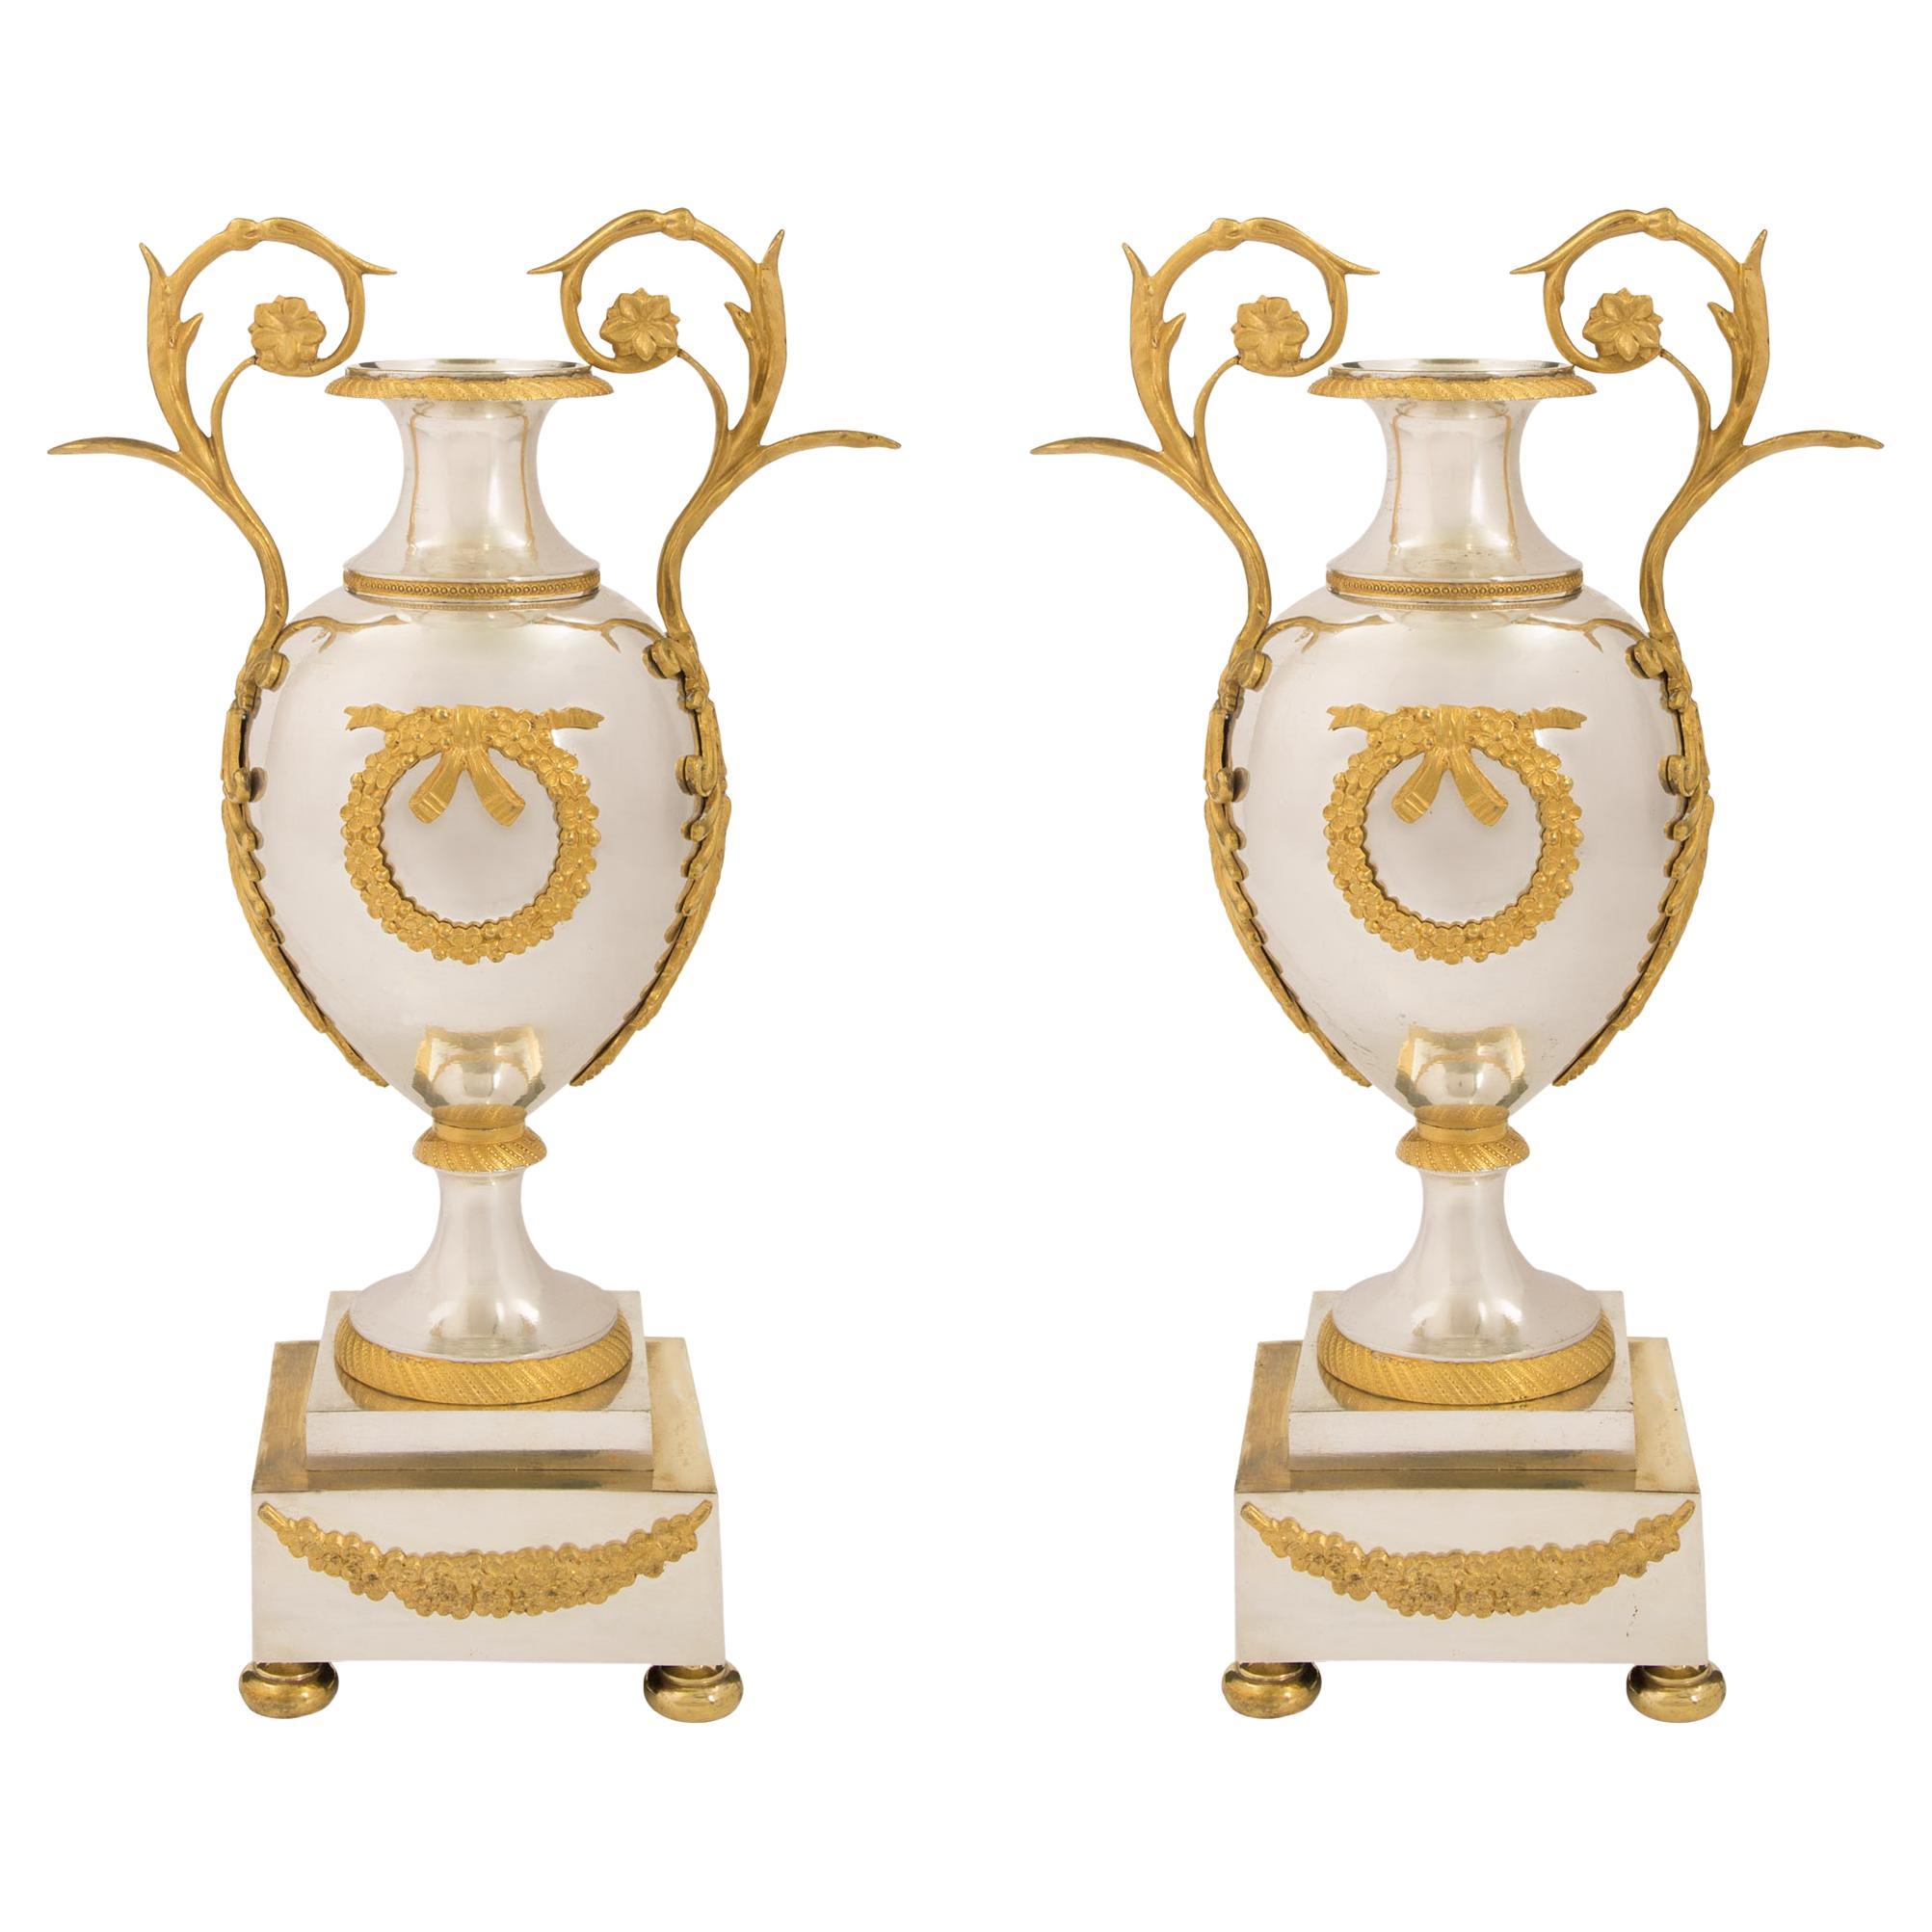 Paire d'urnes de style néoclassique françaises du début du XIXe siècle en bronze et bronze doré